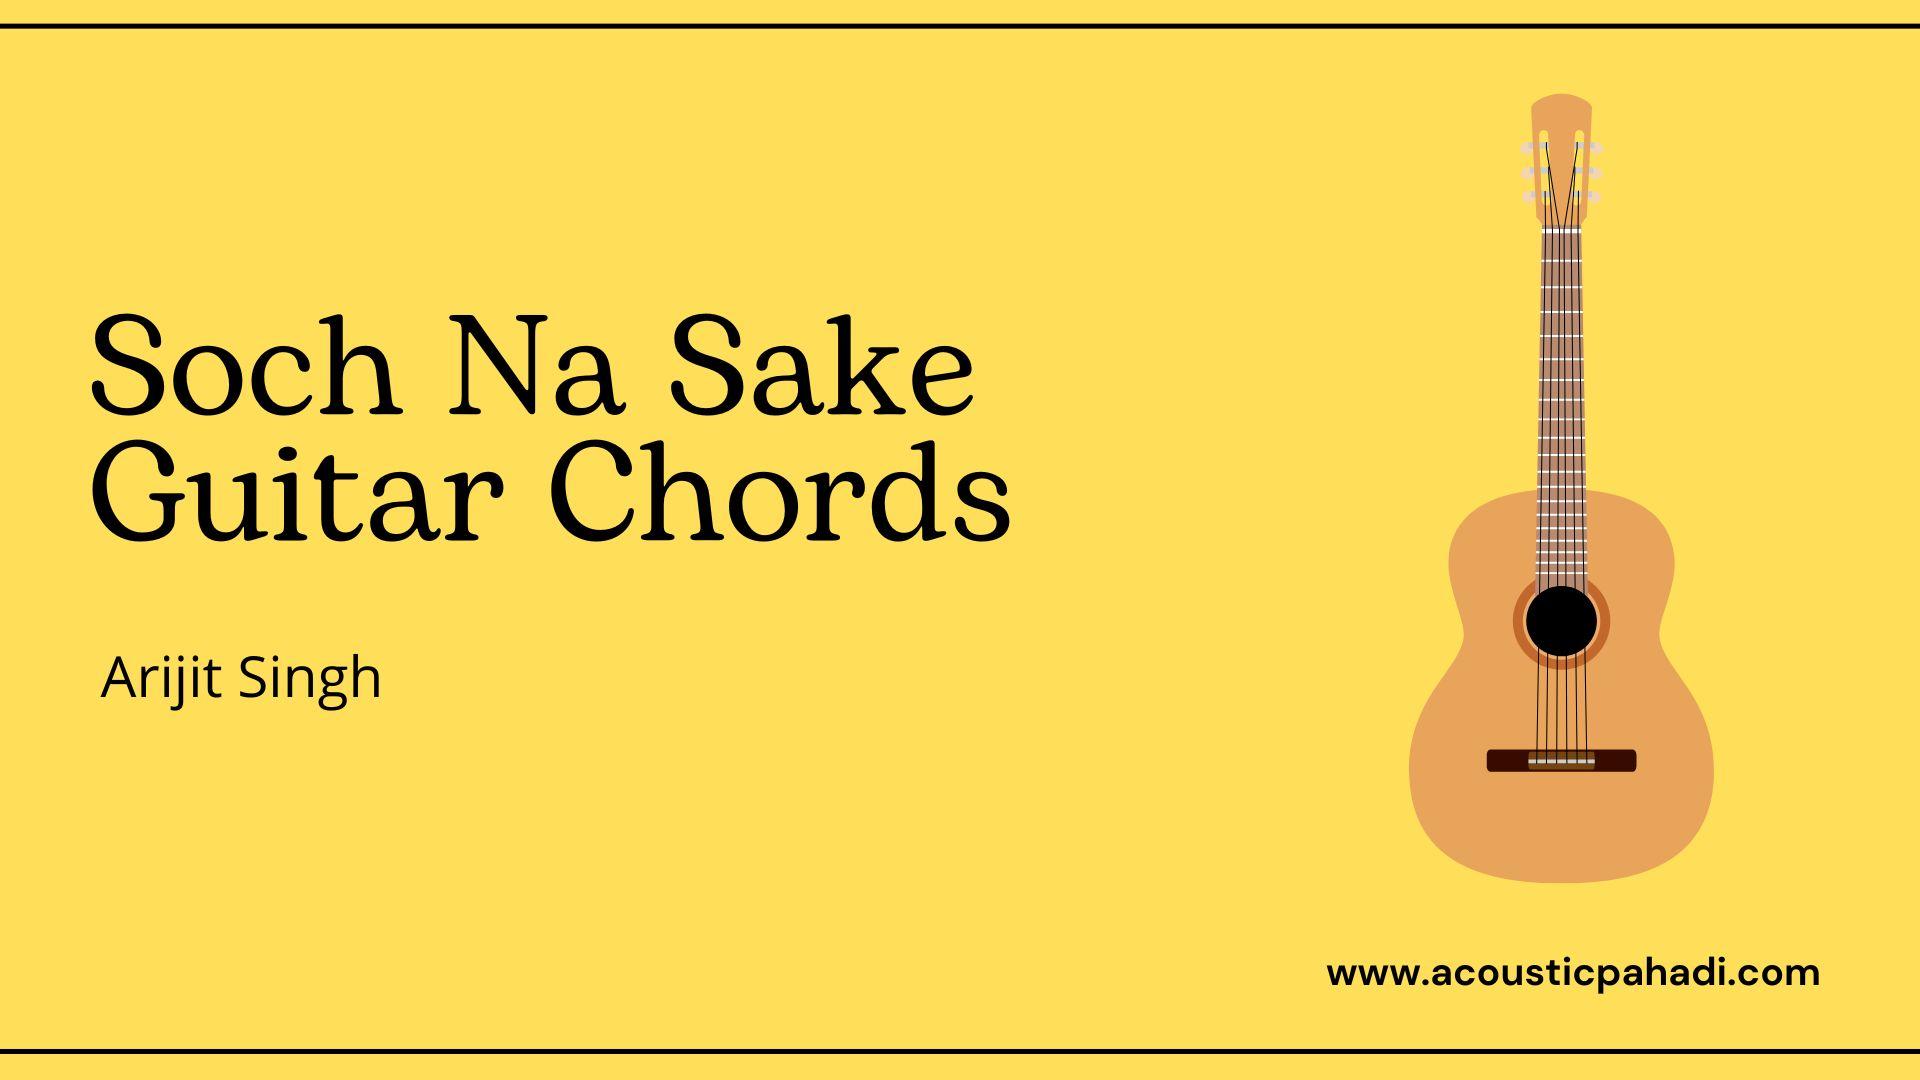 Soch Na Sake Guitar Chords